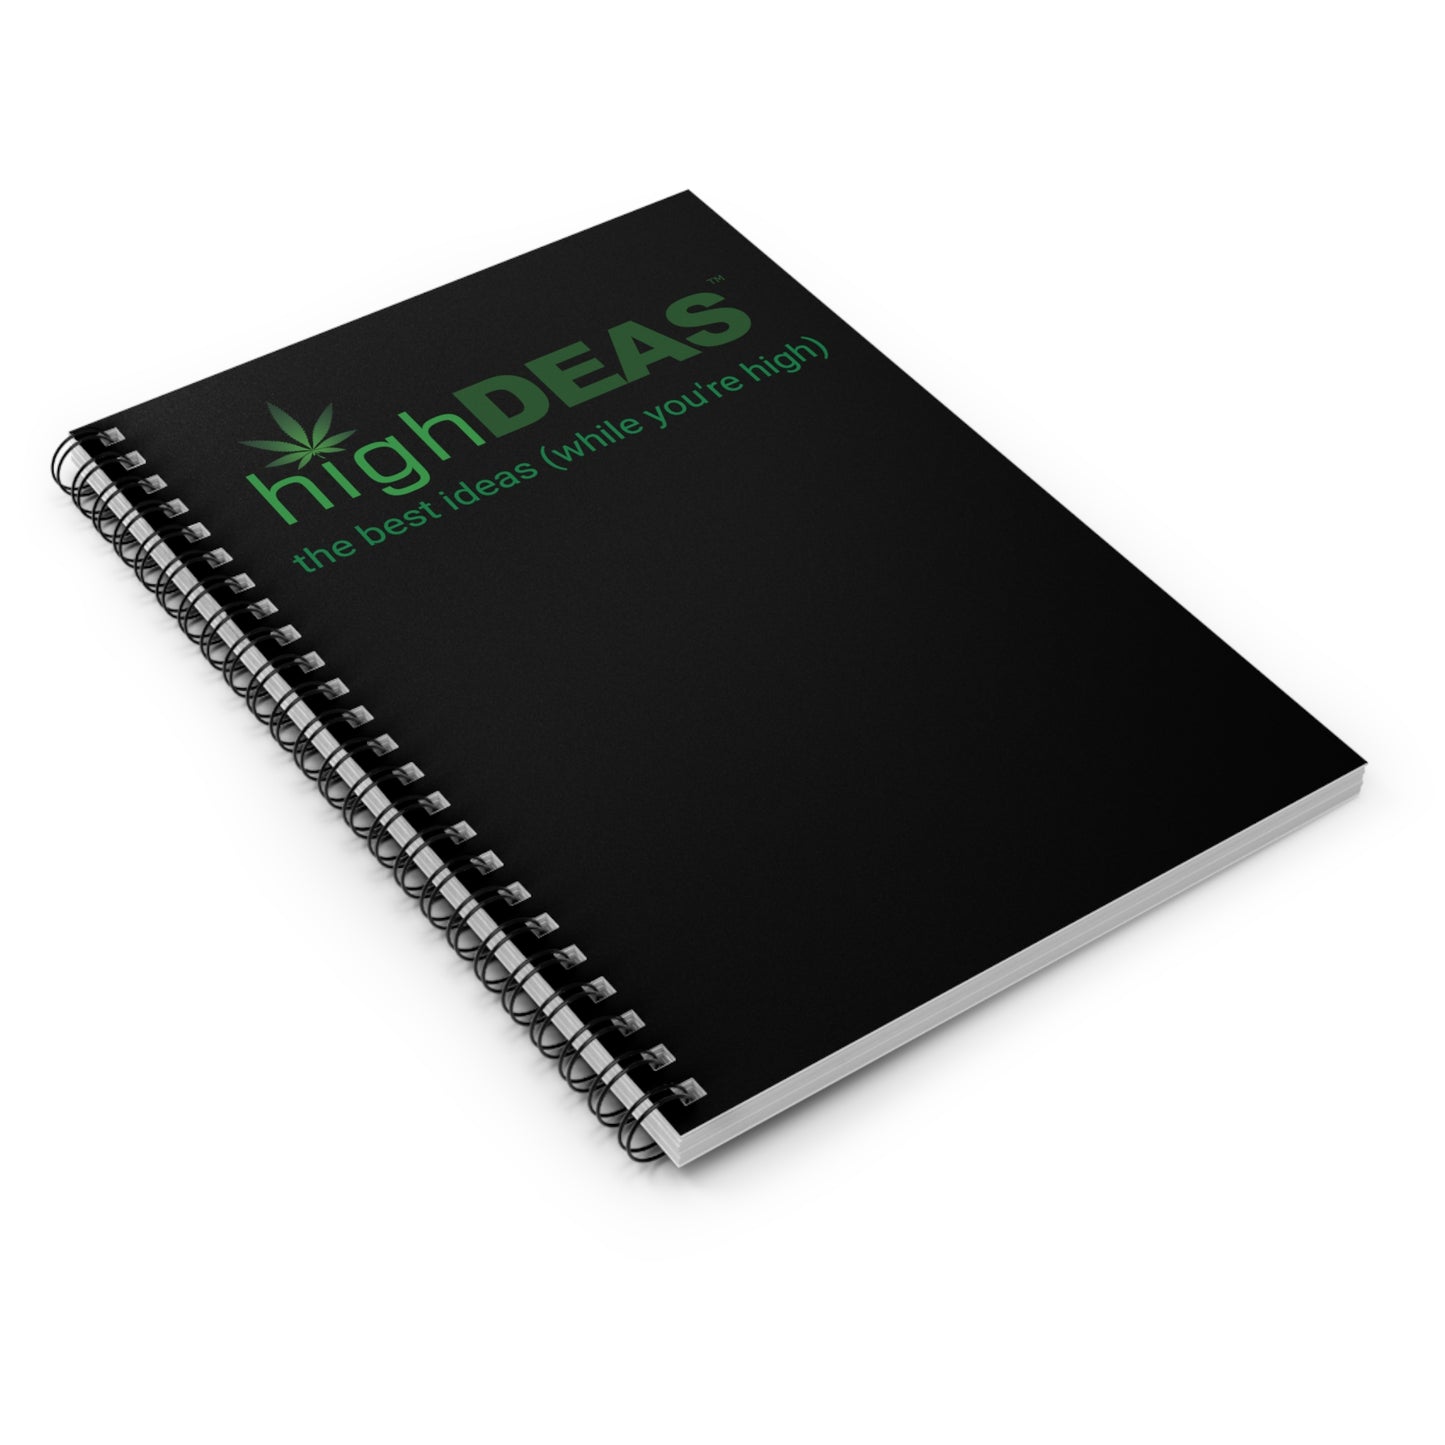 highDEAS™ Spiral Notebook - Ruled Line